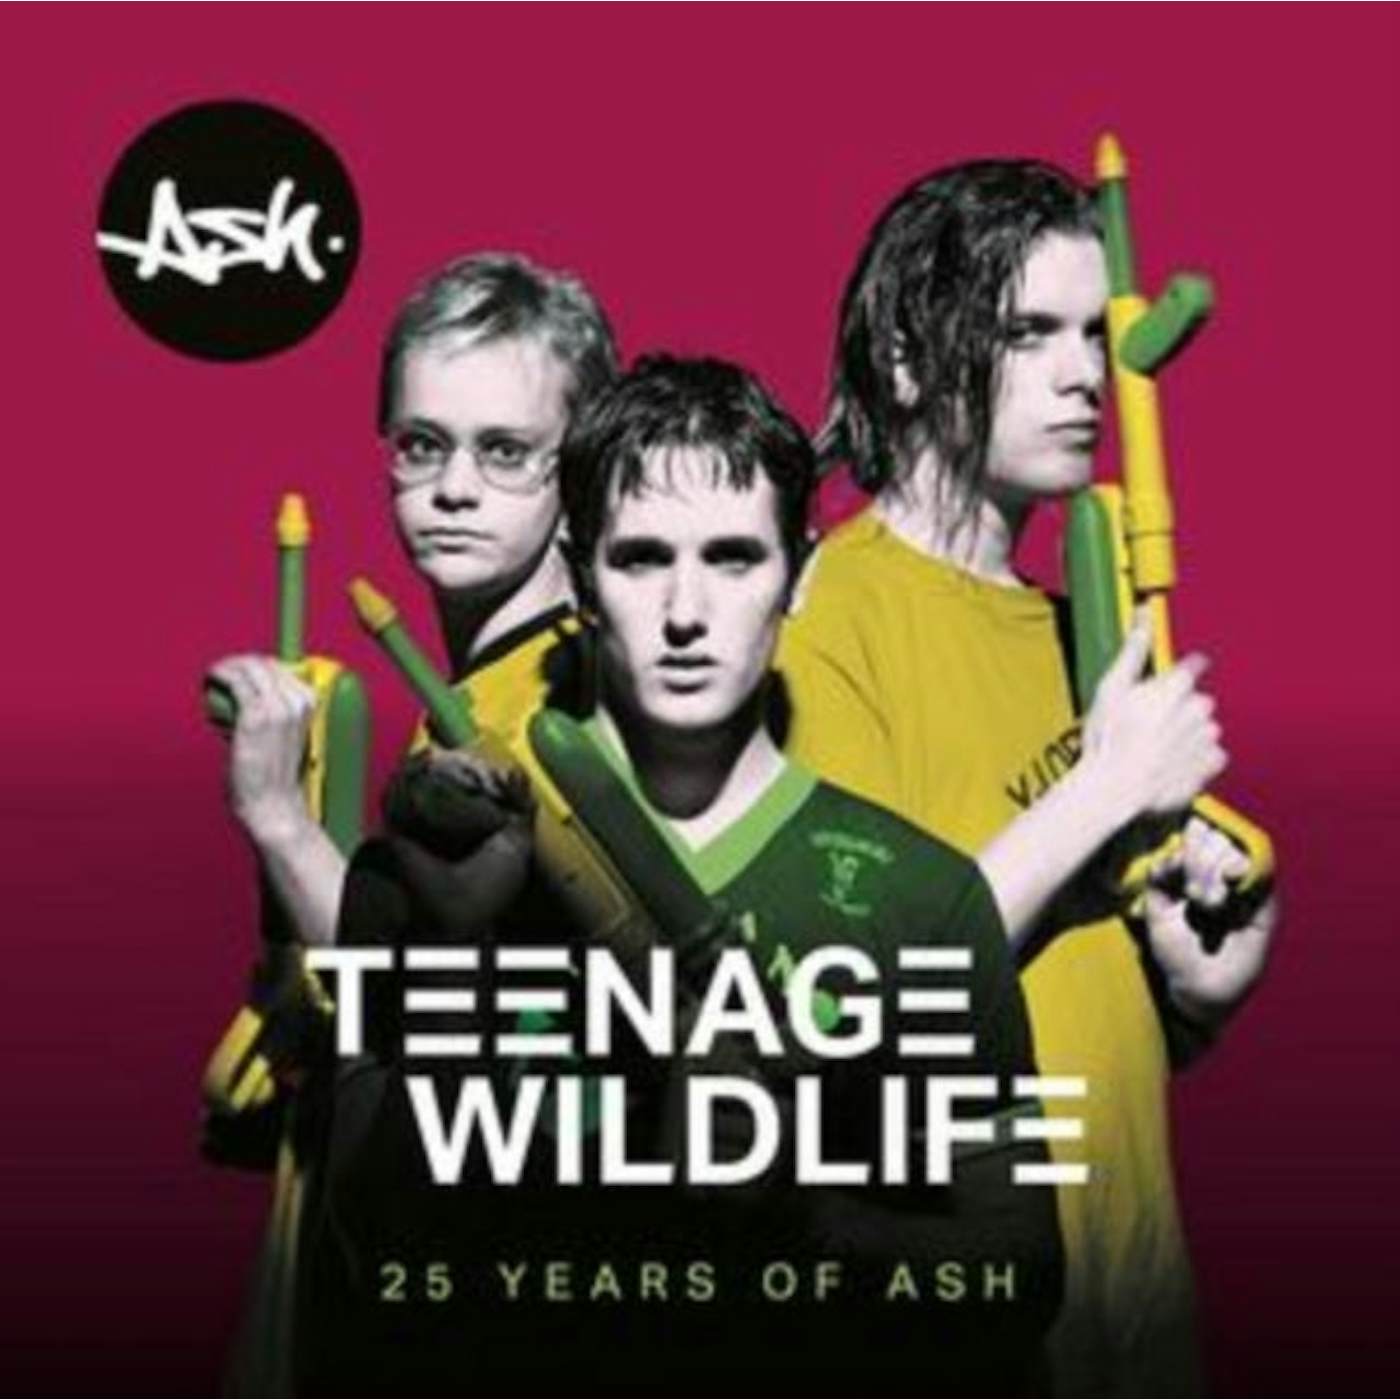 Ash CD - Teenage Wildlife - 25 Years Of Ash